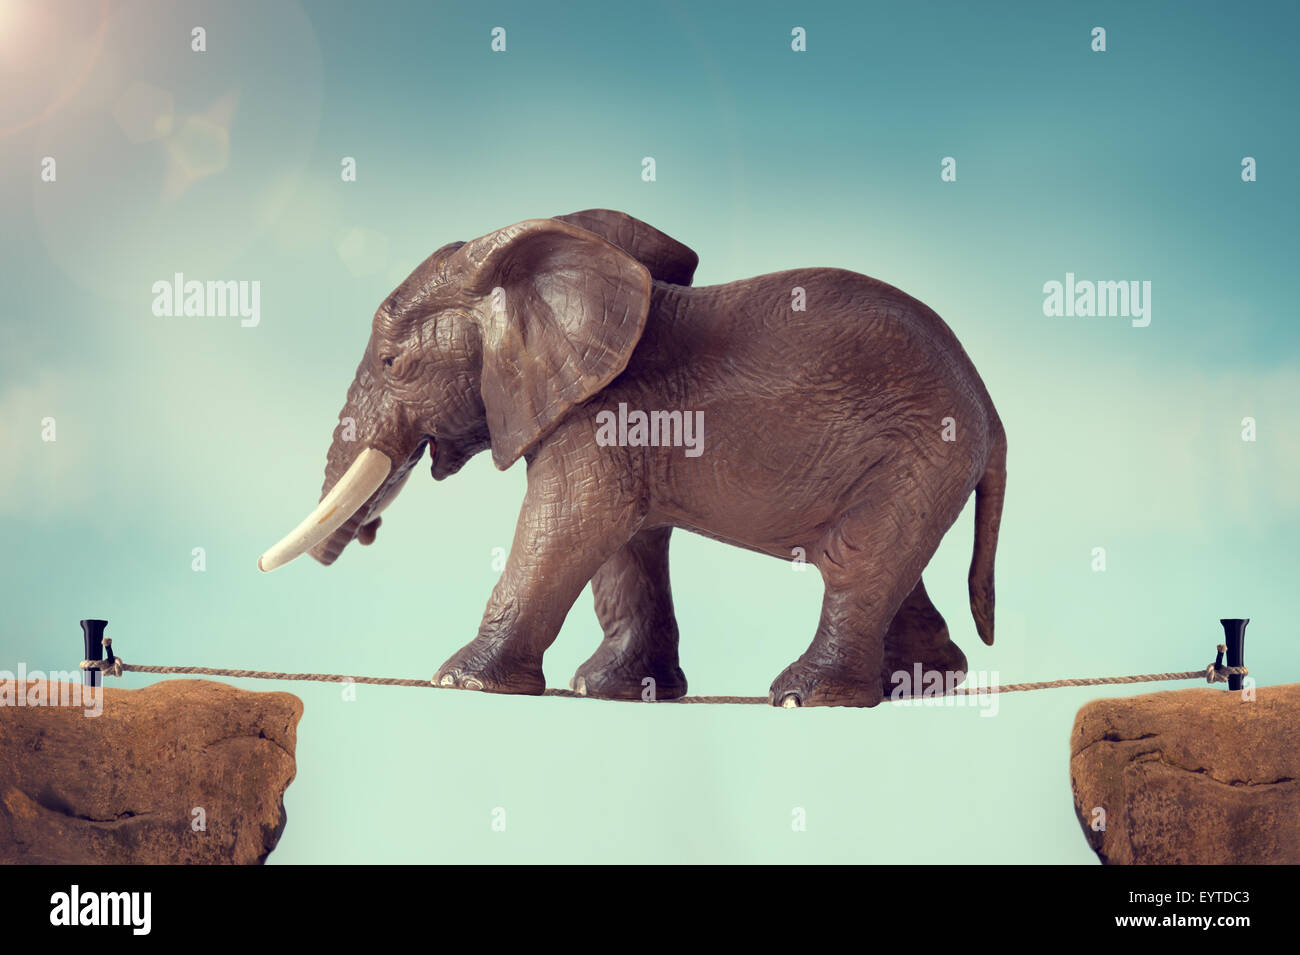 Elefante caminando sobre una cuerda floja Foto de stock